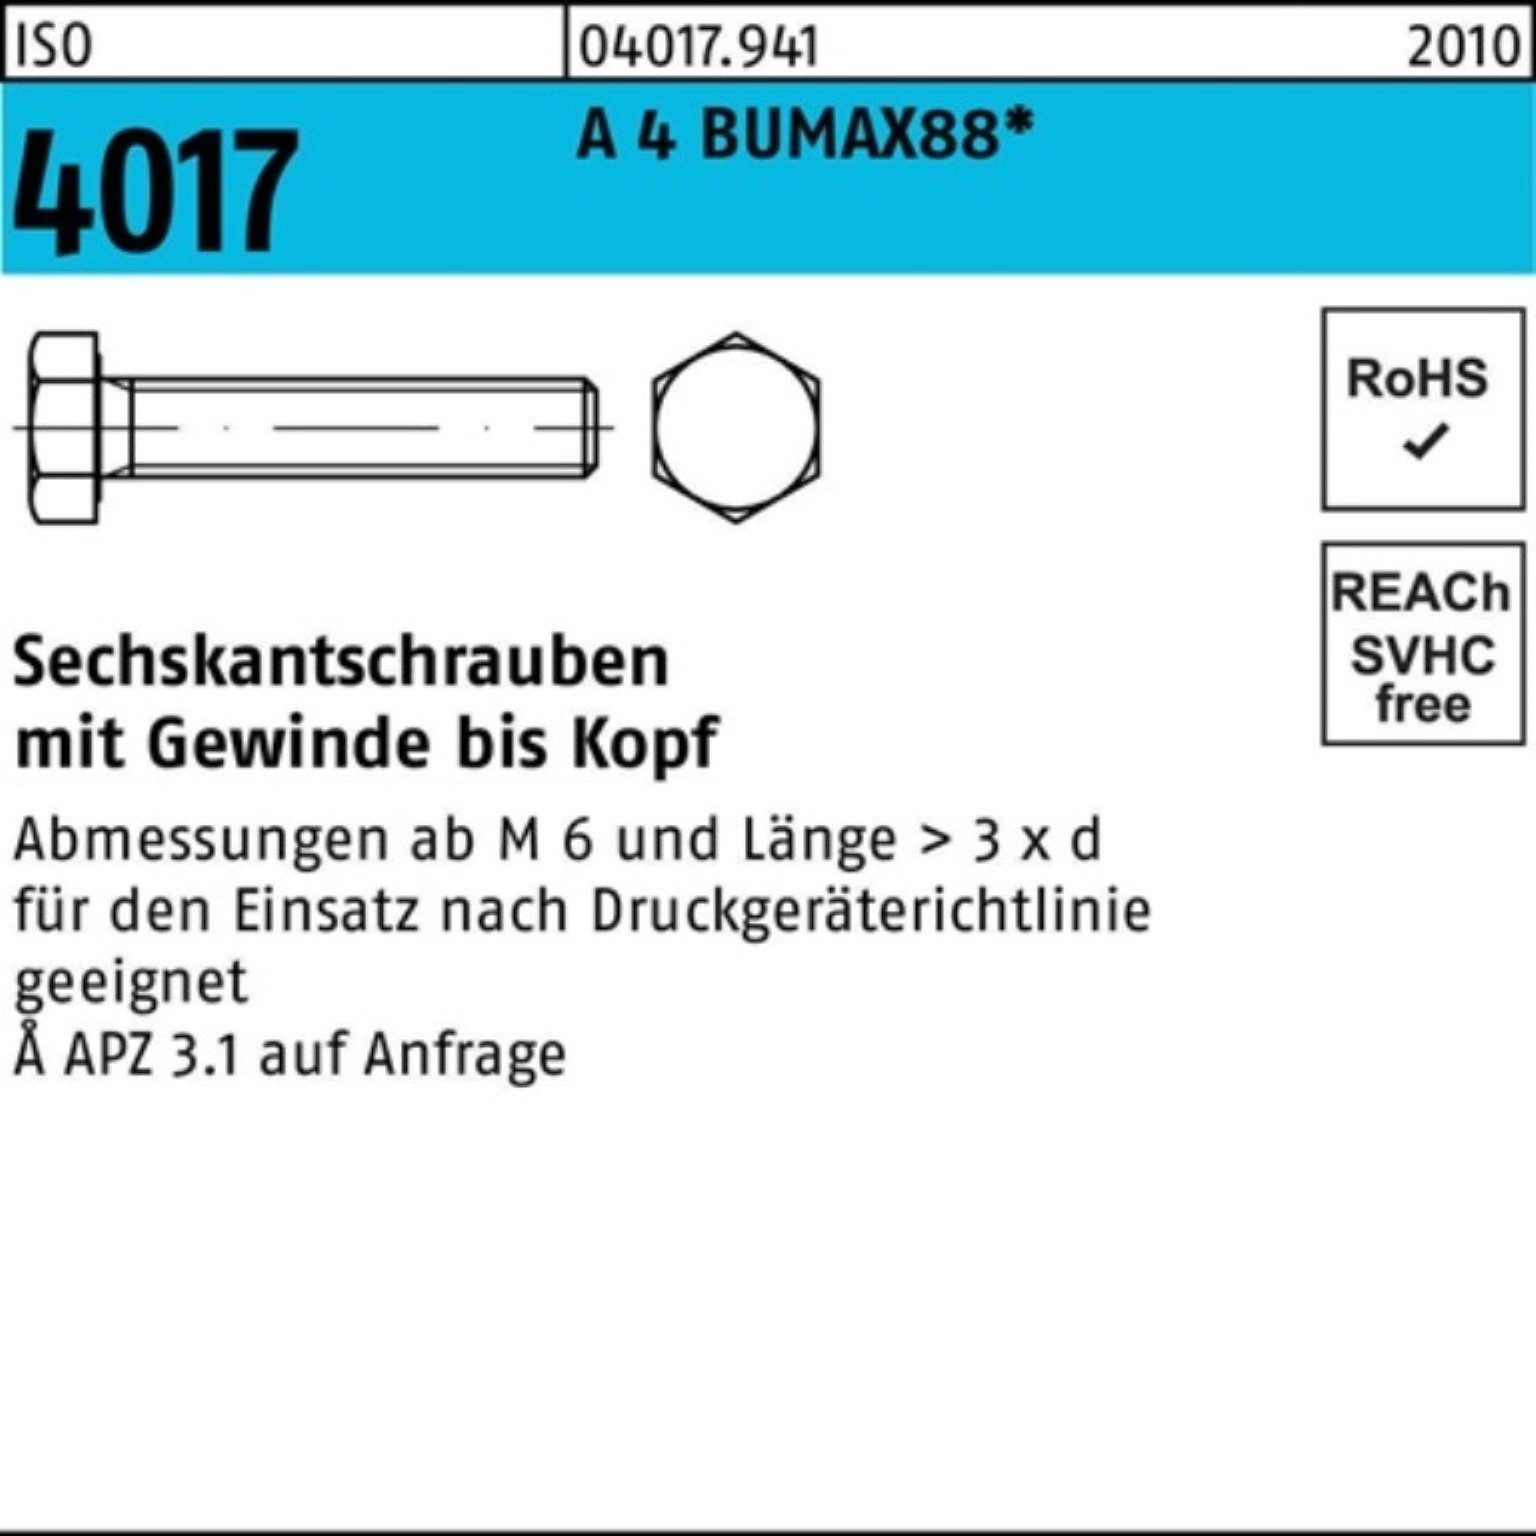 Stück BUMAX88 Bufab 100er Sechskantschraube M5x A 25 100 VG ISO 4017 Pack Sechskantschraube 4